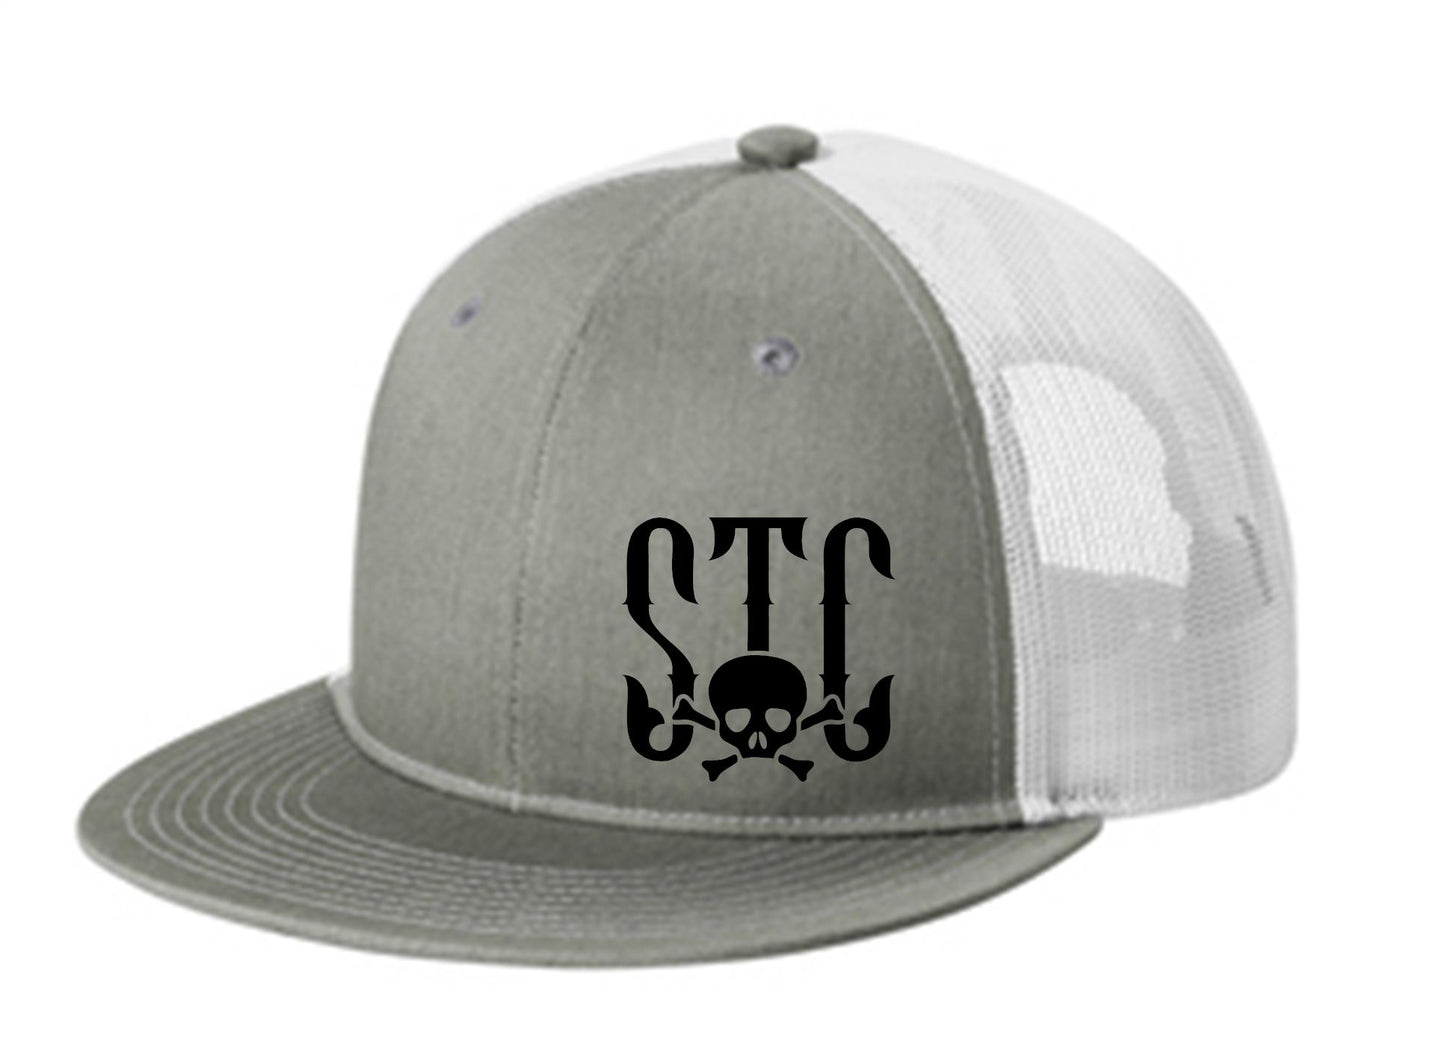 STC Flat Bill Trucker Hats